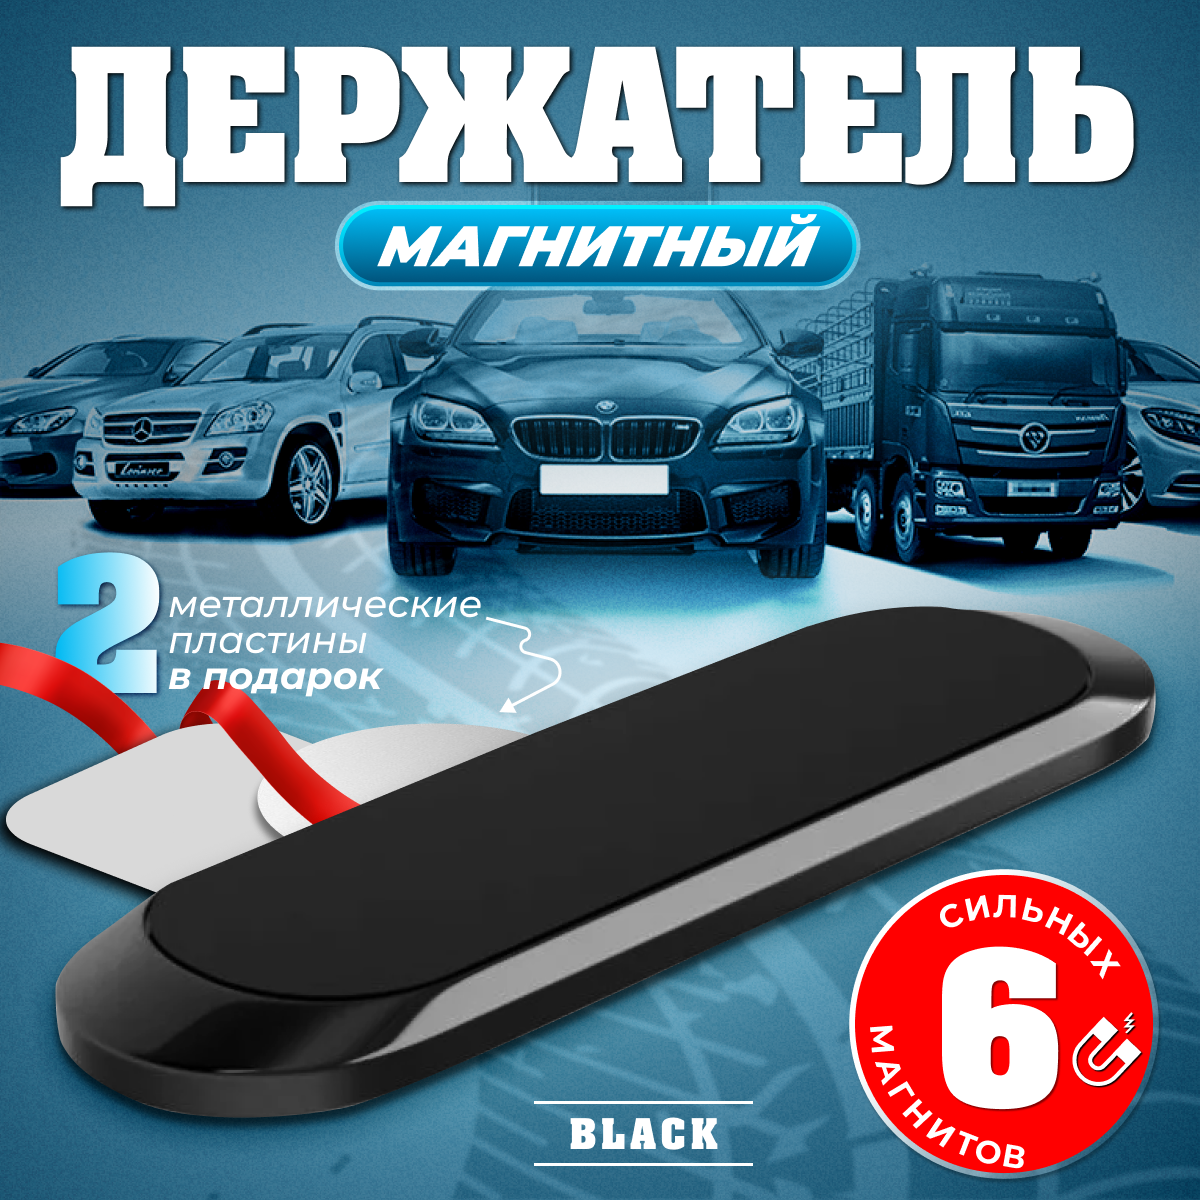 Автомобильный магнитный держатель для телефона в комплекте с пластинами 2 шт, автодержатель для смартфона универсальный, металлический, черный